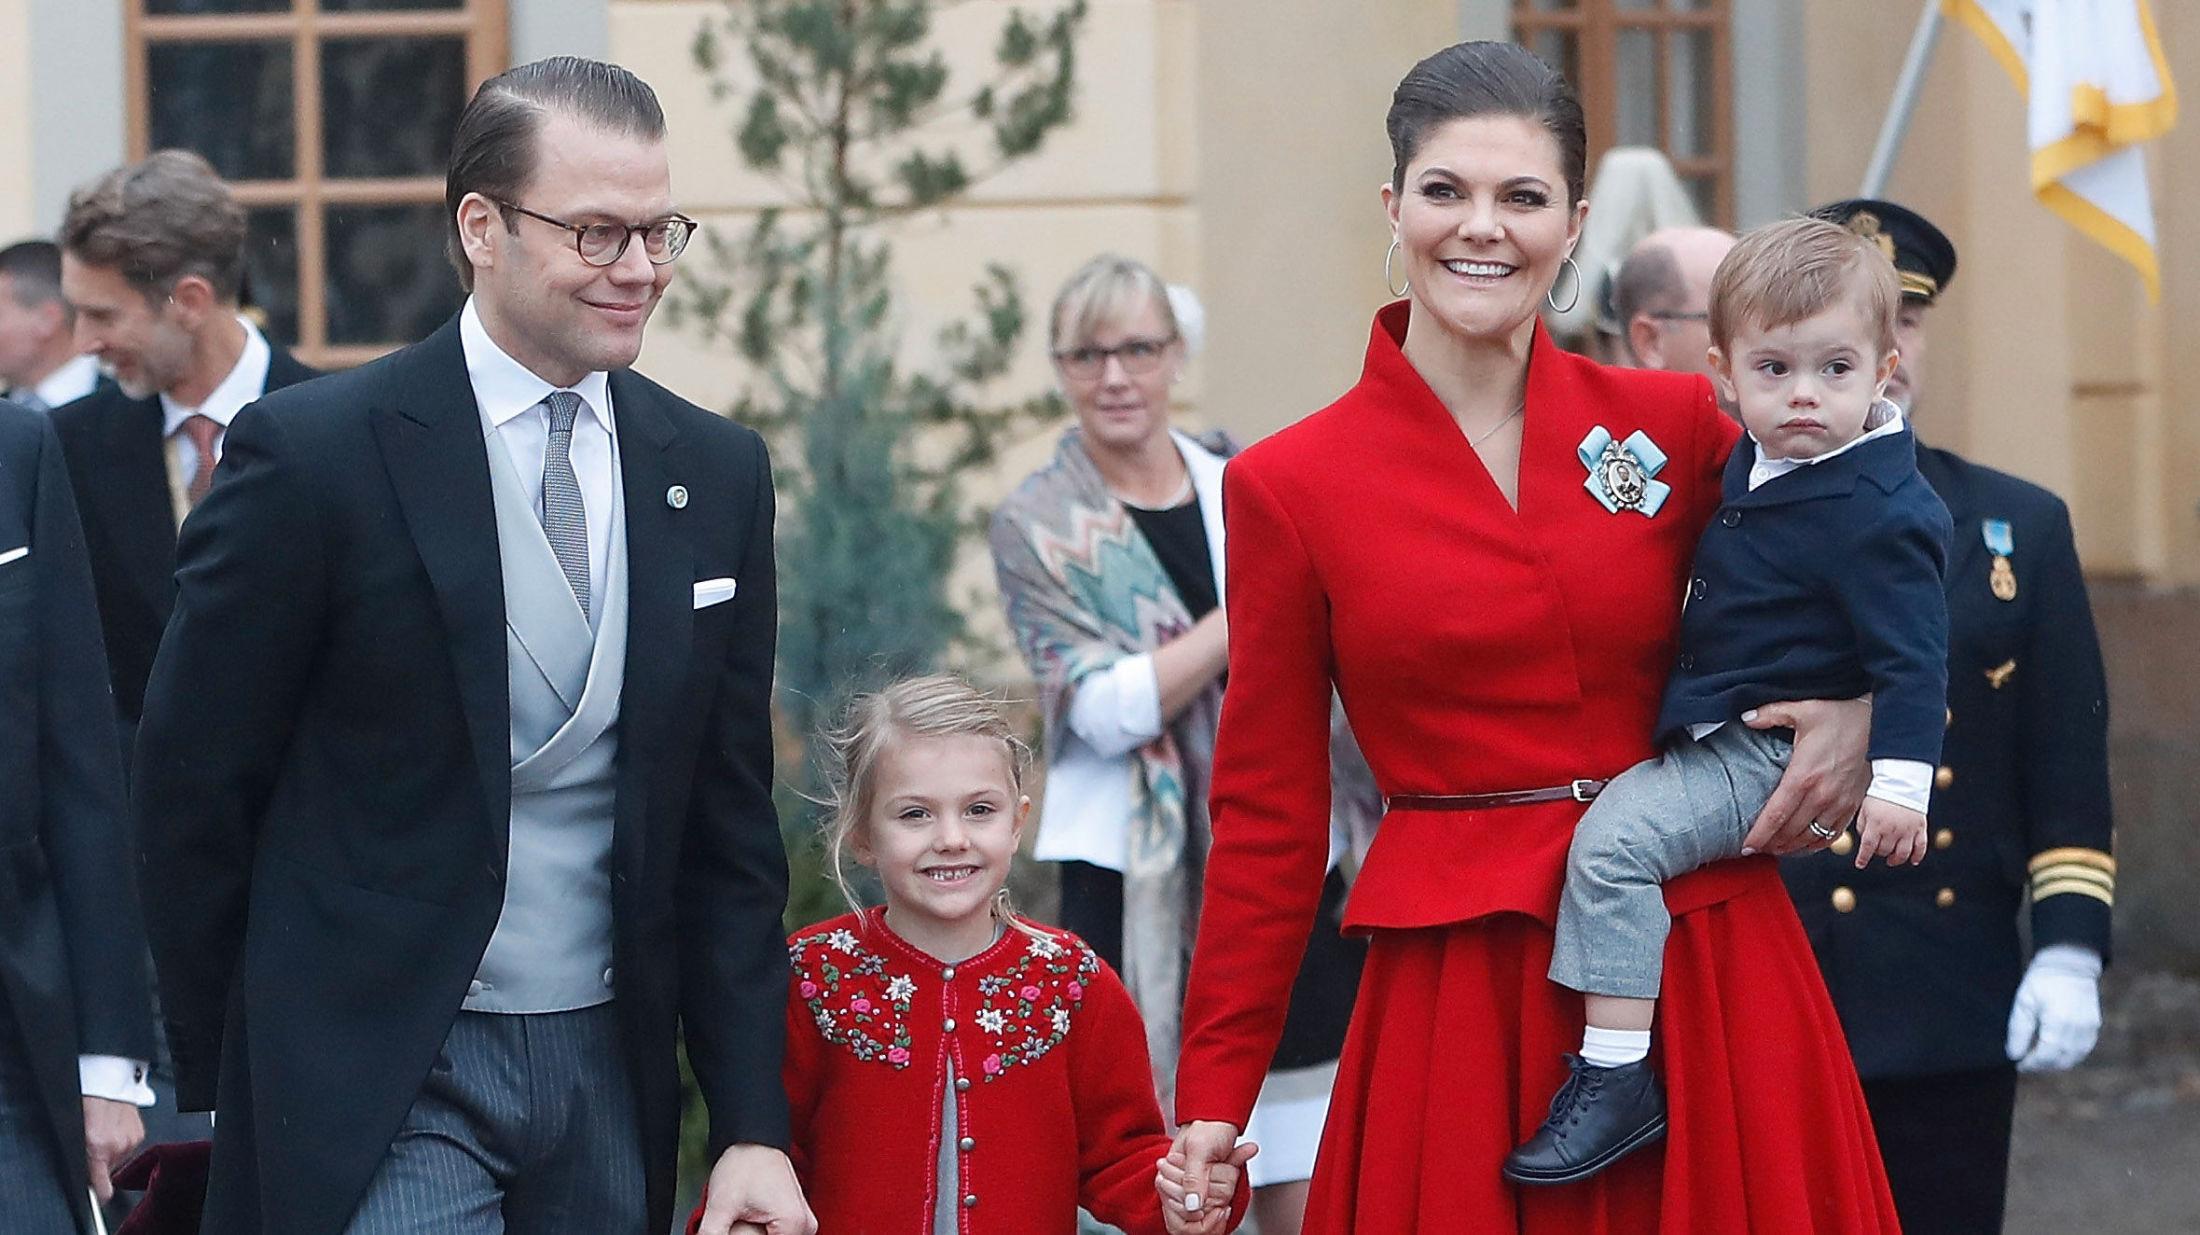 BLIKKFANG: Kronprinsesse Victoria var antrukket i rød jakke og rødt plisé skjørt i dåpen til prins Gabriel i dag. Foto: Getty Images